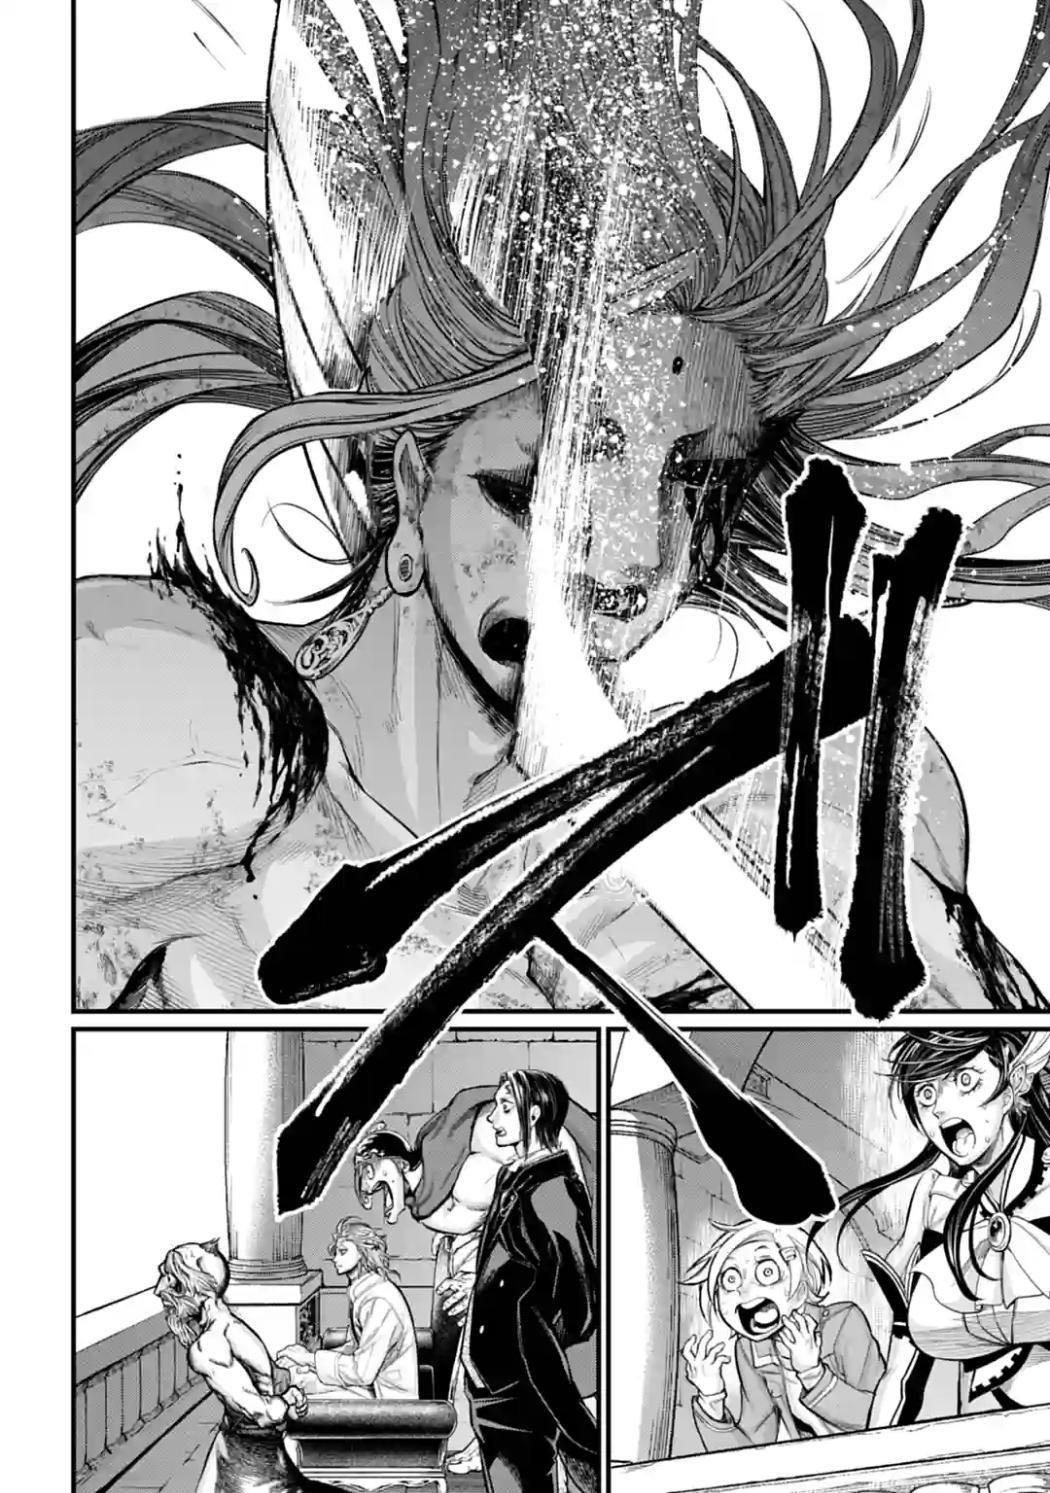 Shuumatsu no Valkyrie Ch.64 Page 8 - Mangago